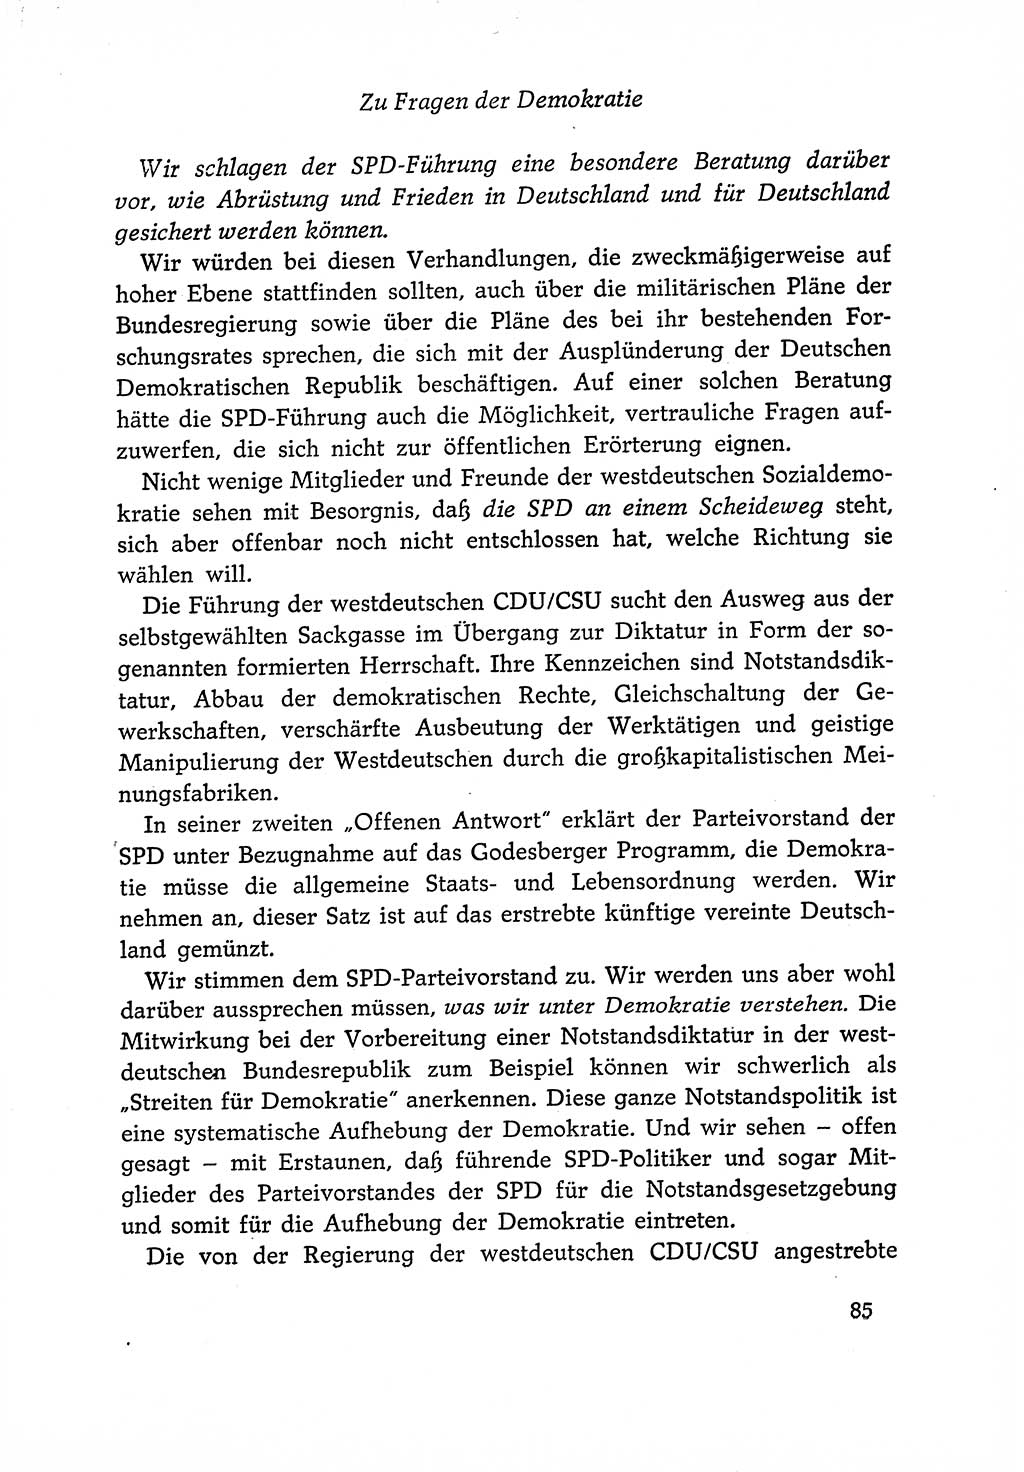 Dokumente der Sozialistischen Einheitspartei Deutschlands (SED) [Deutsche Demokratische Republik (DDR)] 1966-1967, Seite 85 (Dok. SED DDR 1966-1967, S. 85)